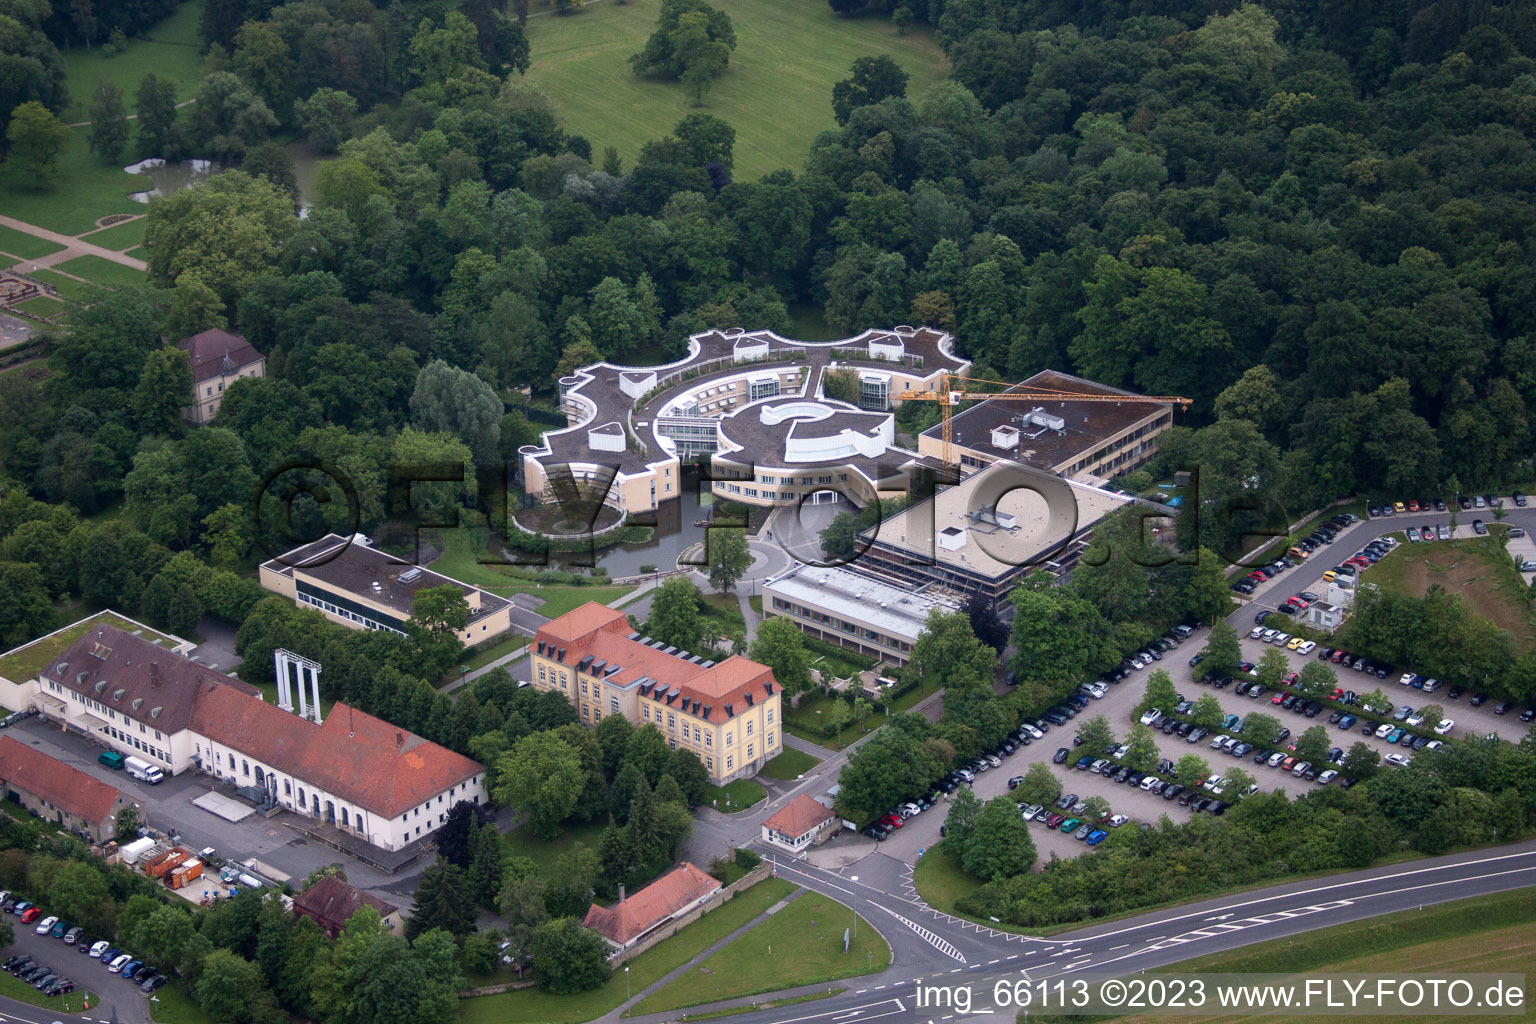 Werneck im Bundesland Bayern, Deutschland aus der Luft betrachtet